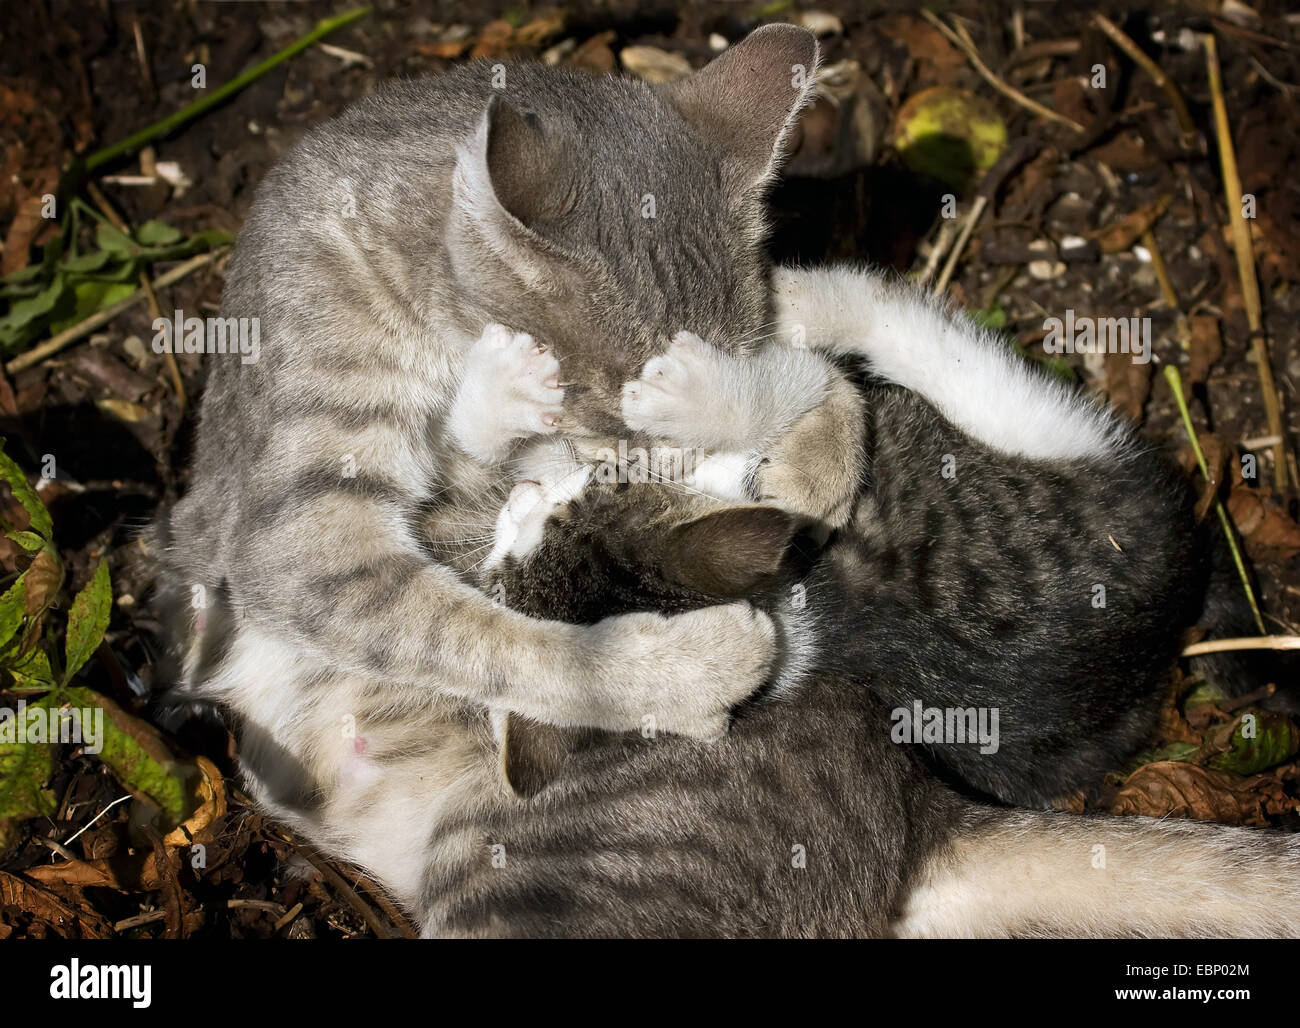 Il gatto domestico, il gatto di casa (Felis silvestris f. catus), grigio tabby cat romping con suoi cuccioli nella paglia, GERMANIA Baden-Wuerttemberg Foto Stock